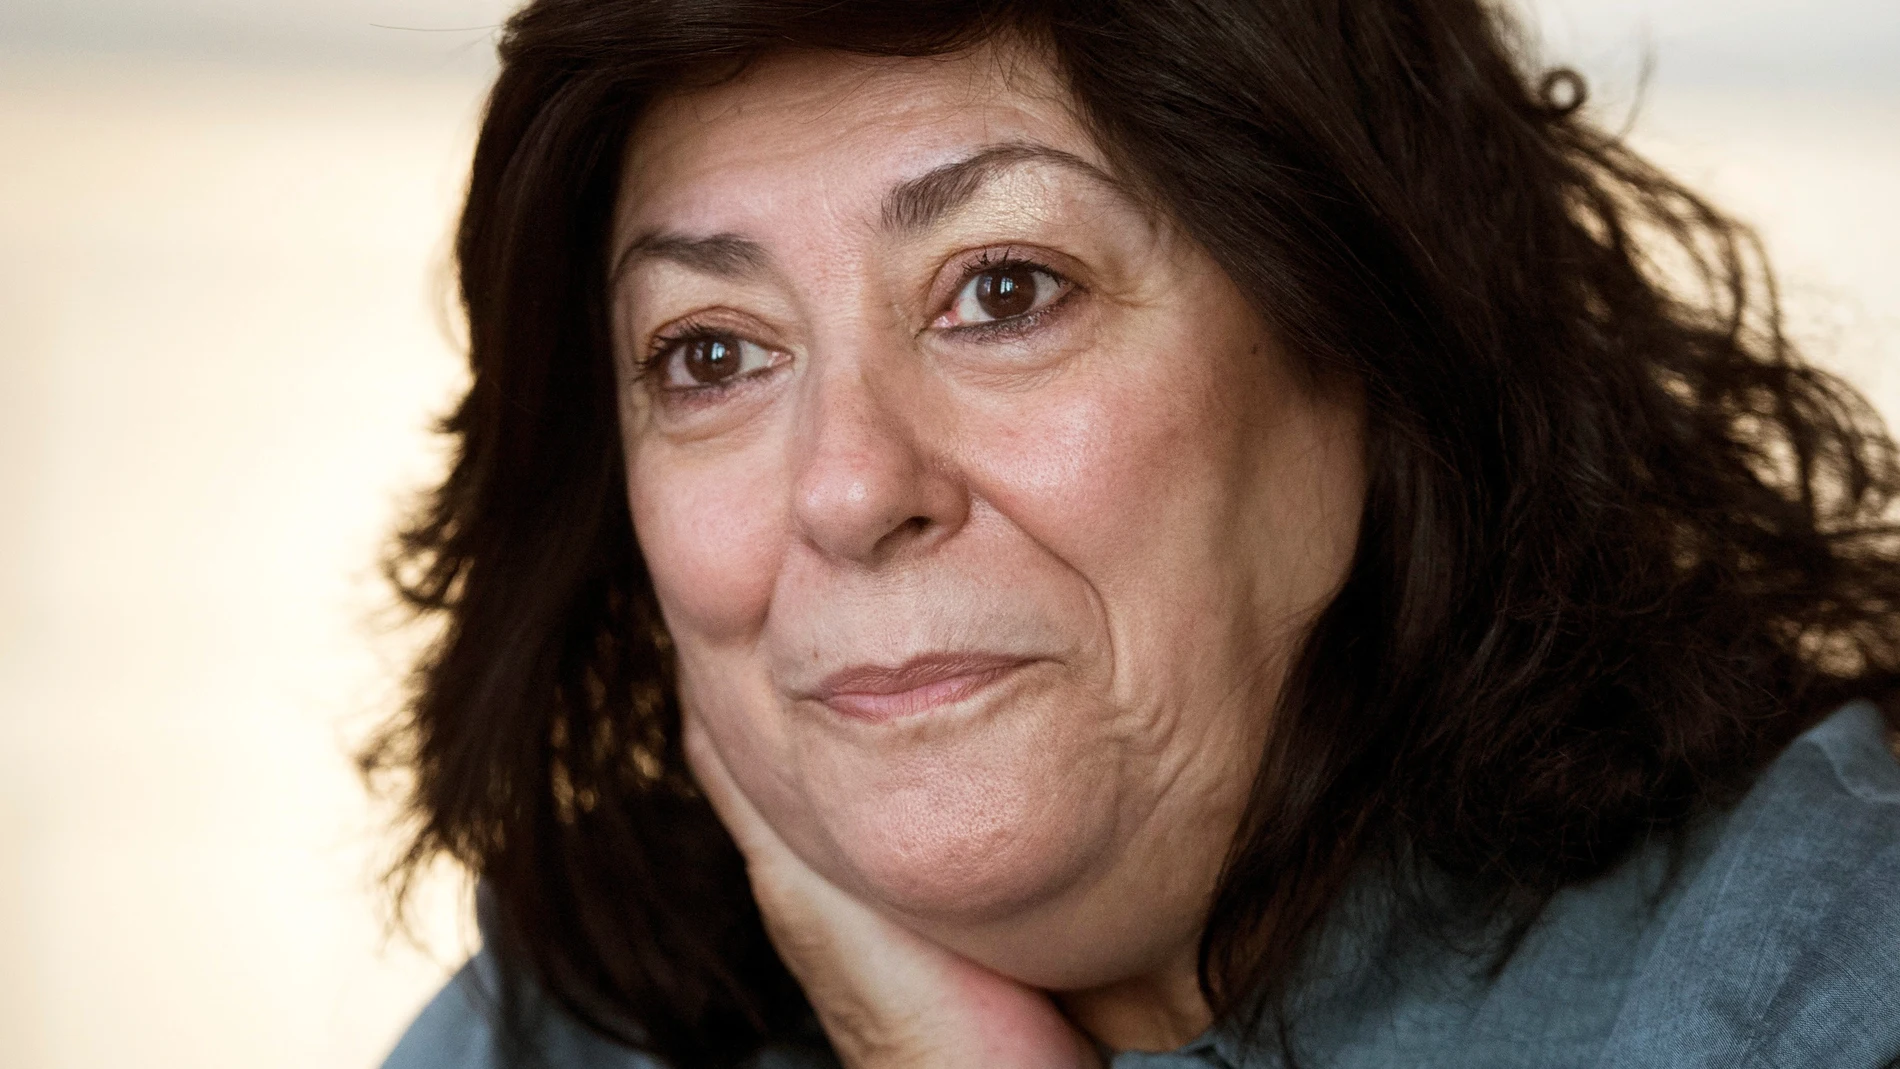 Fallece a los 61 años la escritora Almudena Grandes